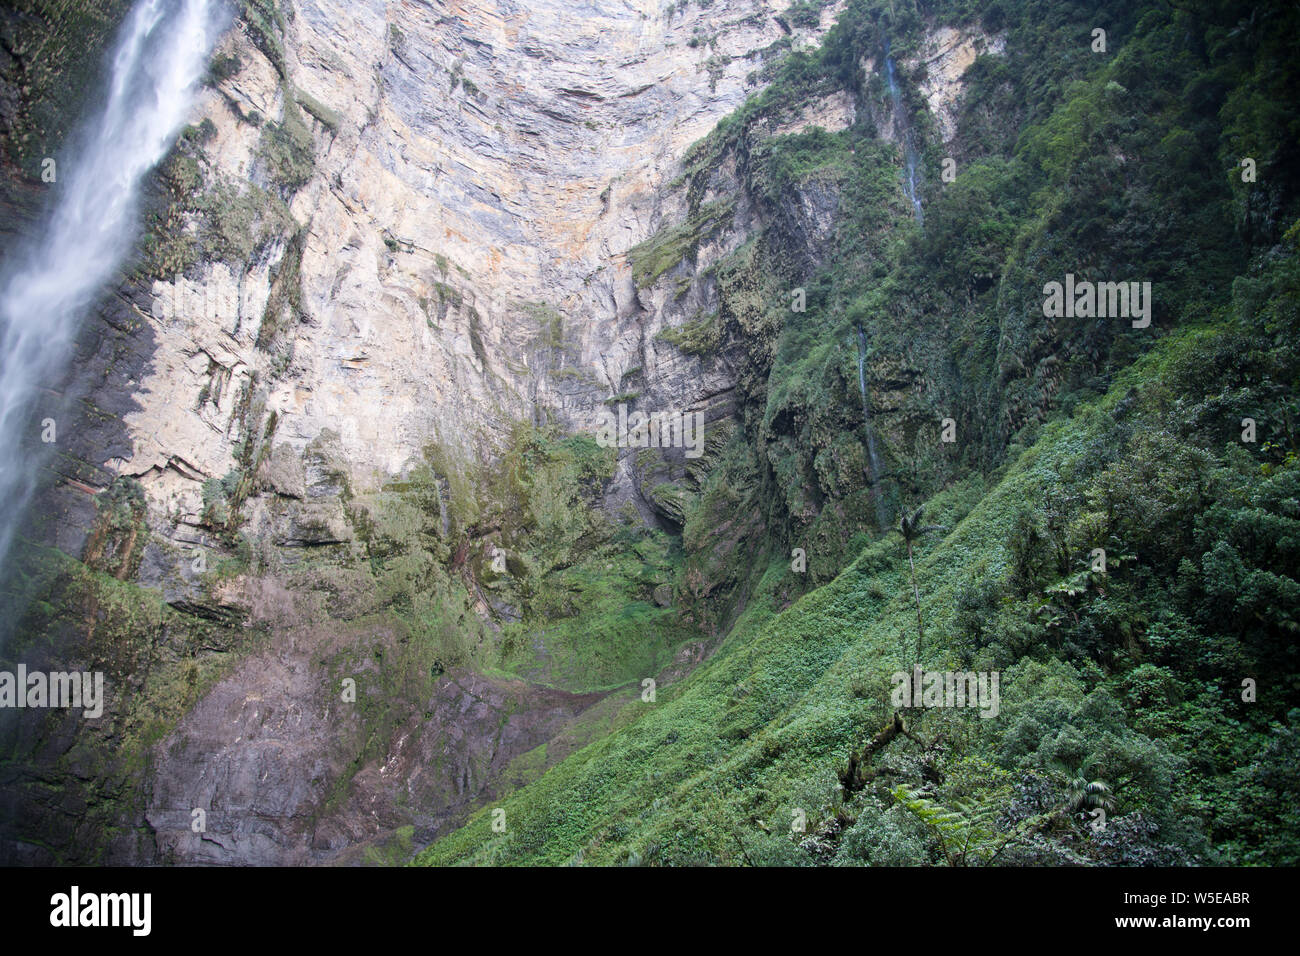 Gocta fällt, Cataratas Gocta, nördliche Hochland, Norden von Peru, Südamerika Stockfoto